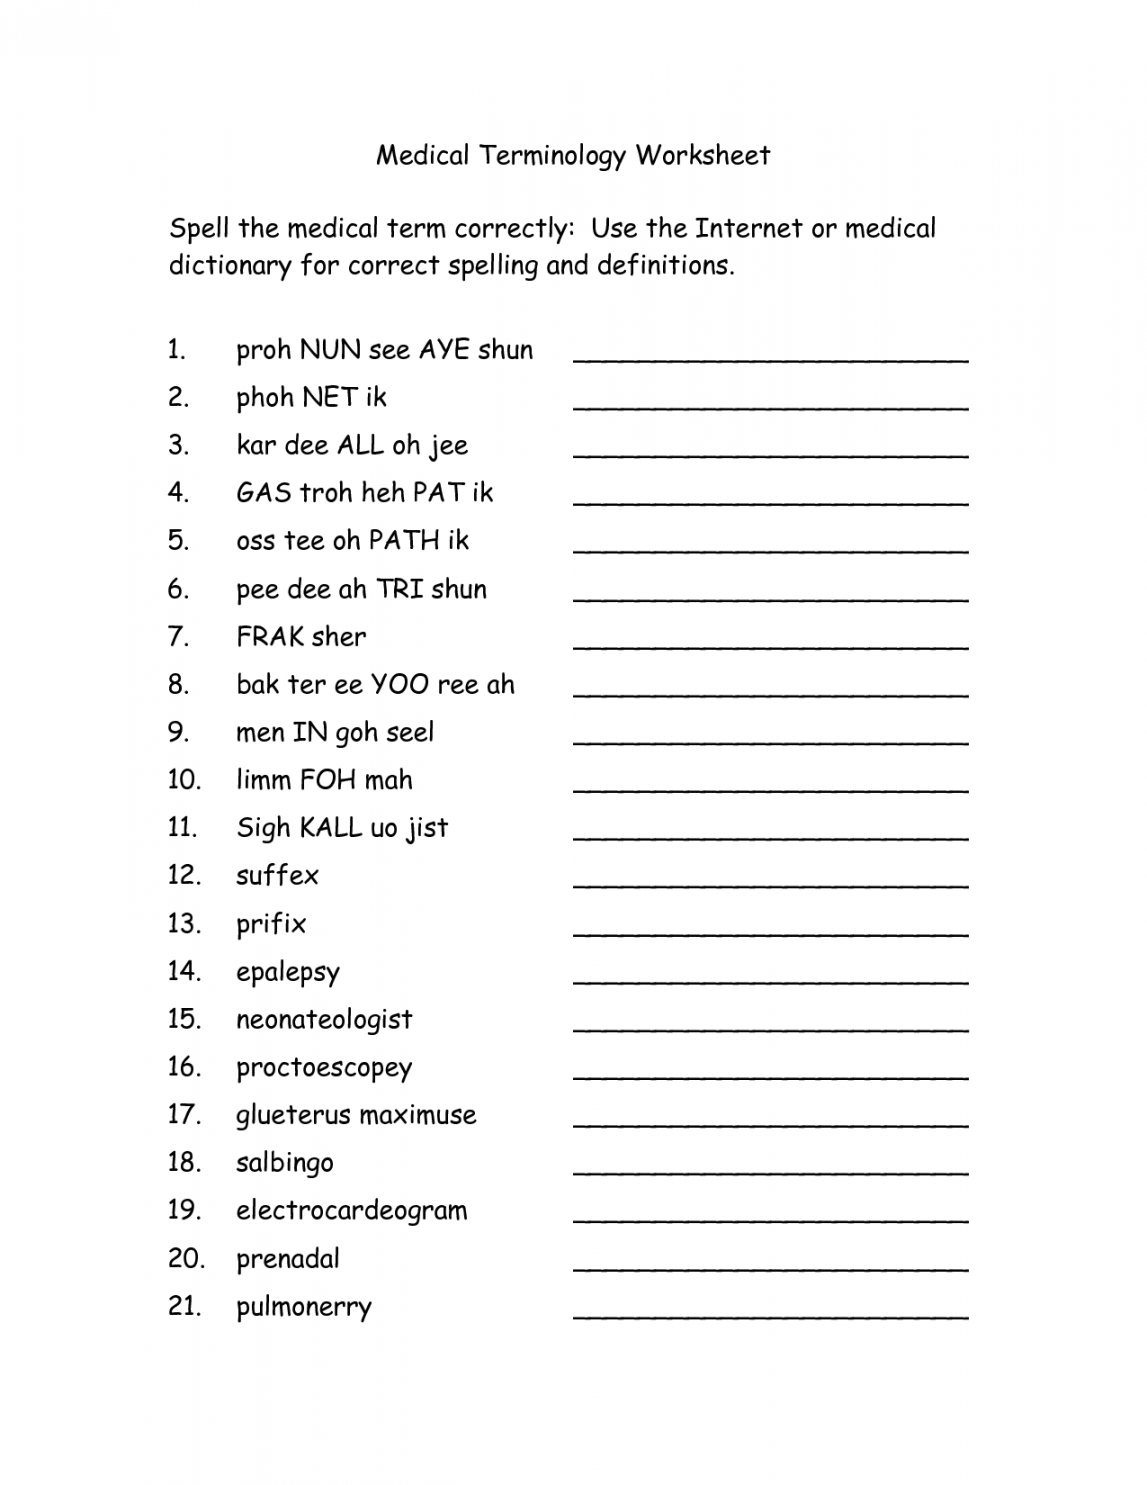 Free Printable Medical Terminology Worksheets  Medical  - FREE Printables - Free Printable Medical Terminology Worksheet